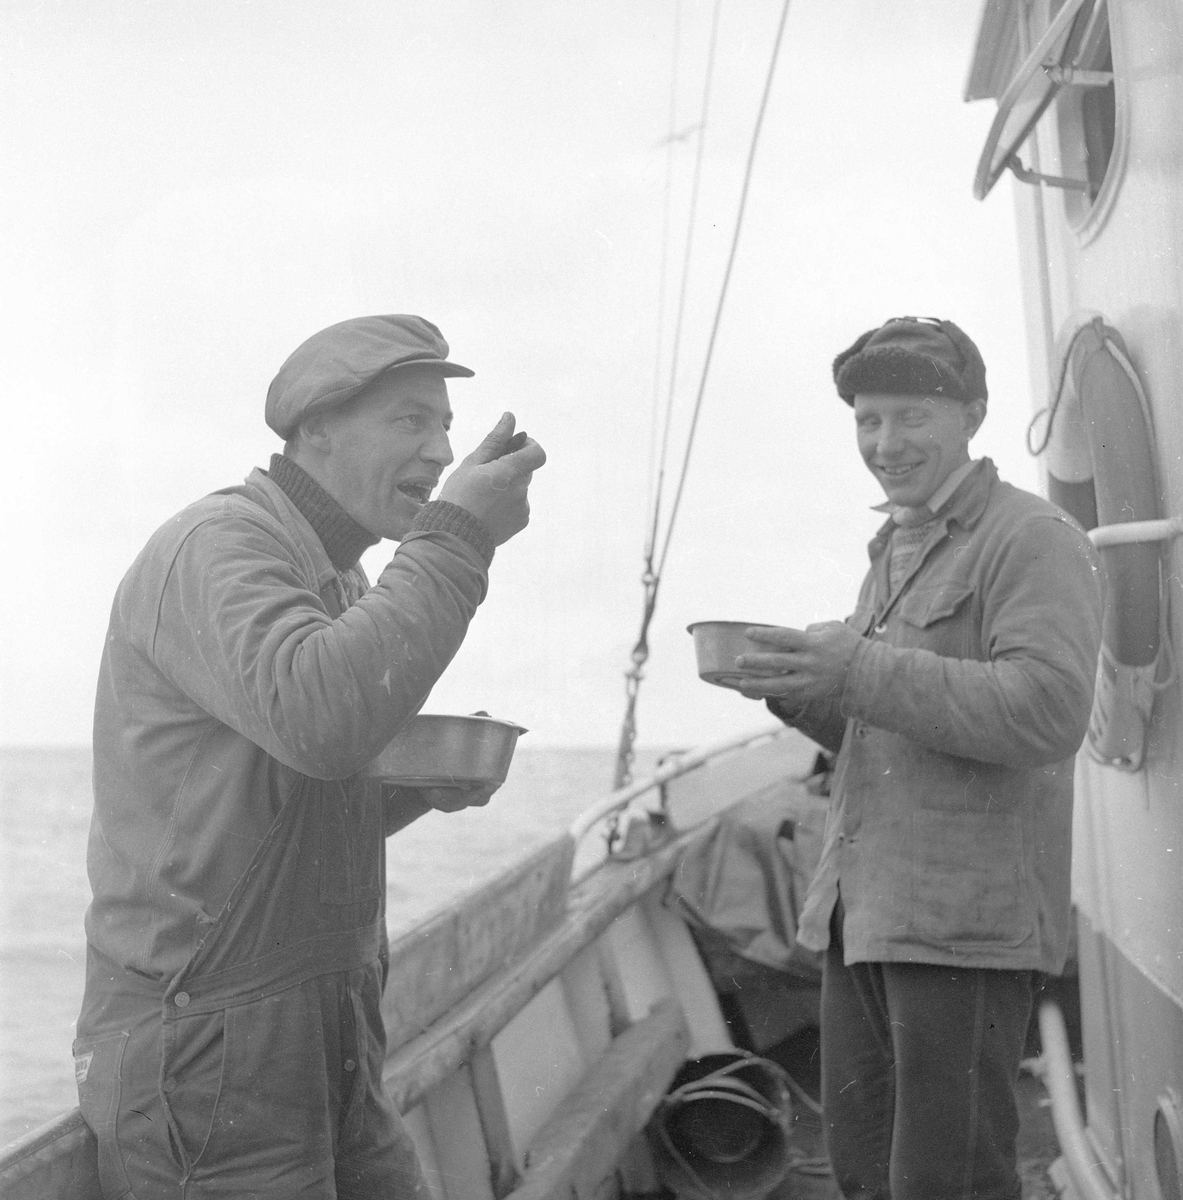 Pigghåfiske på Shetland.
Shetland, 14-22. mai 1958, mat på dekk for sultne karer.